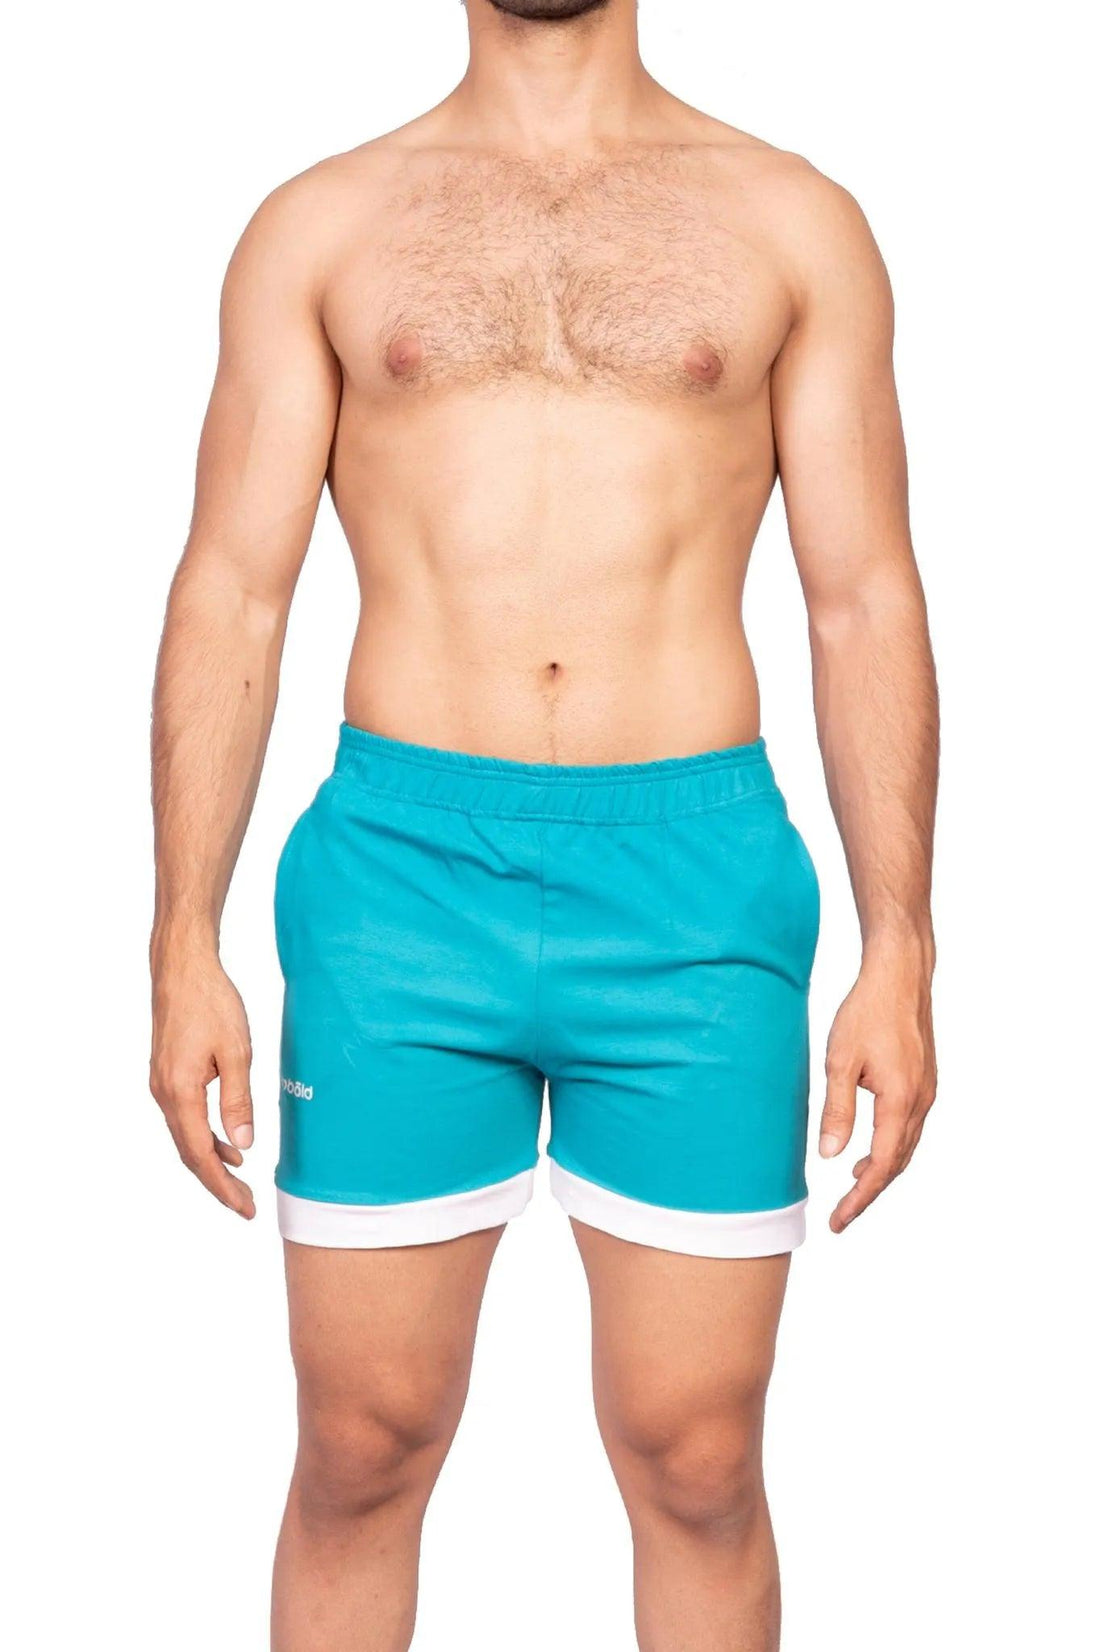 Shorts - Aqua Zephyr Shorts - Turquoise - Erobold - 